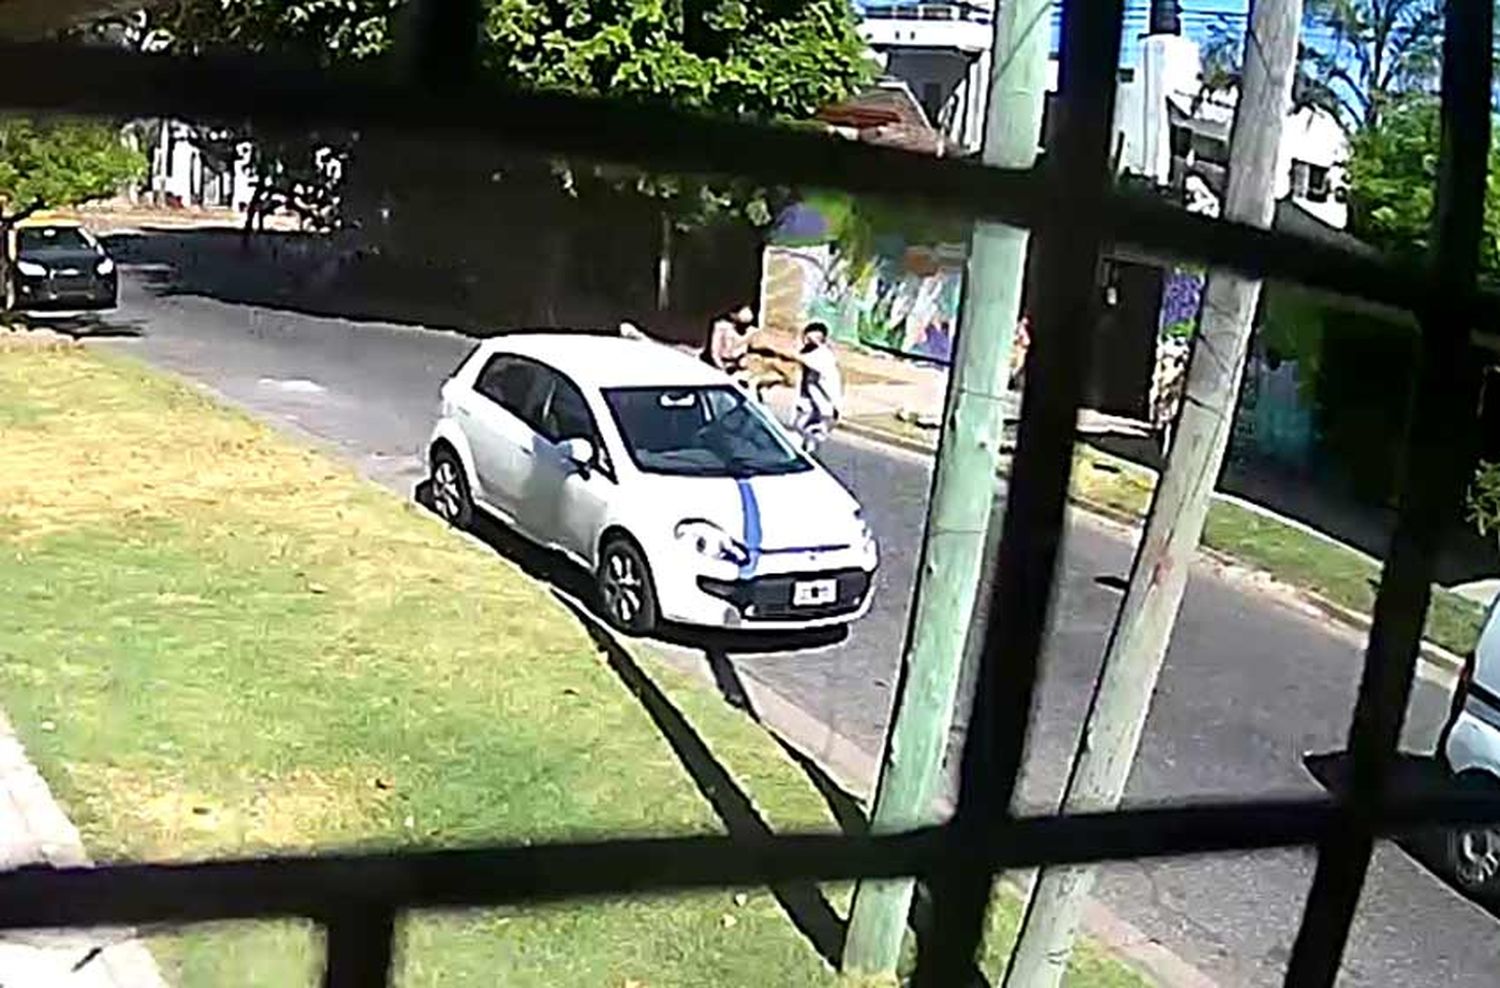 Inseguridad en barrio Parque: vecinos difundieron videos de robos violentos en plena calle